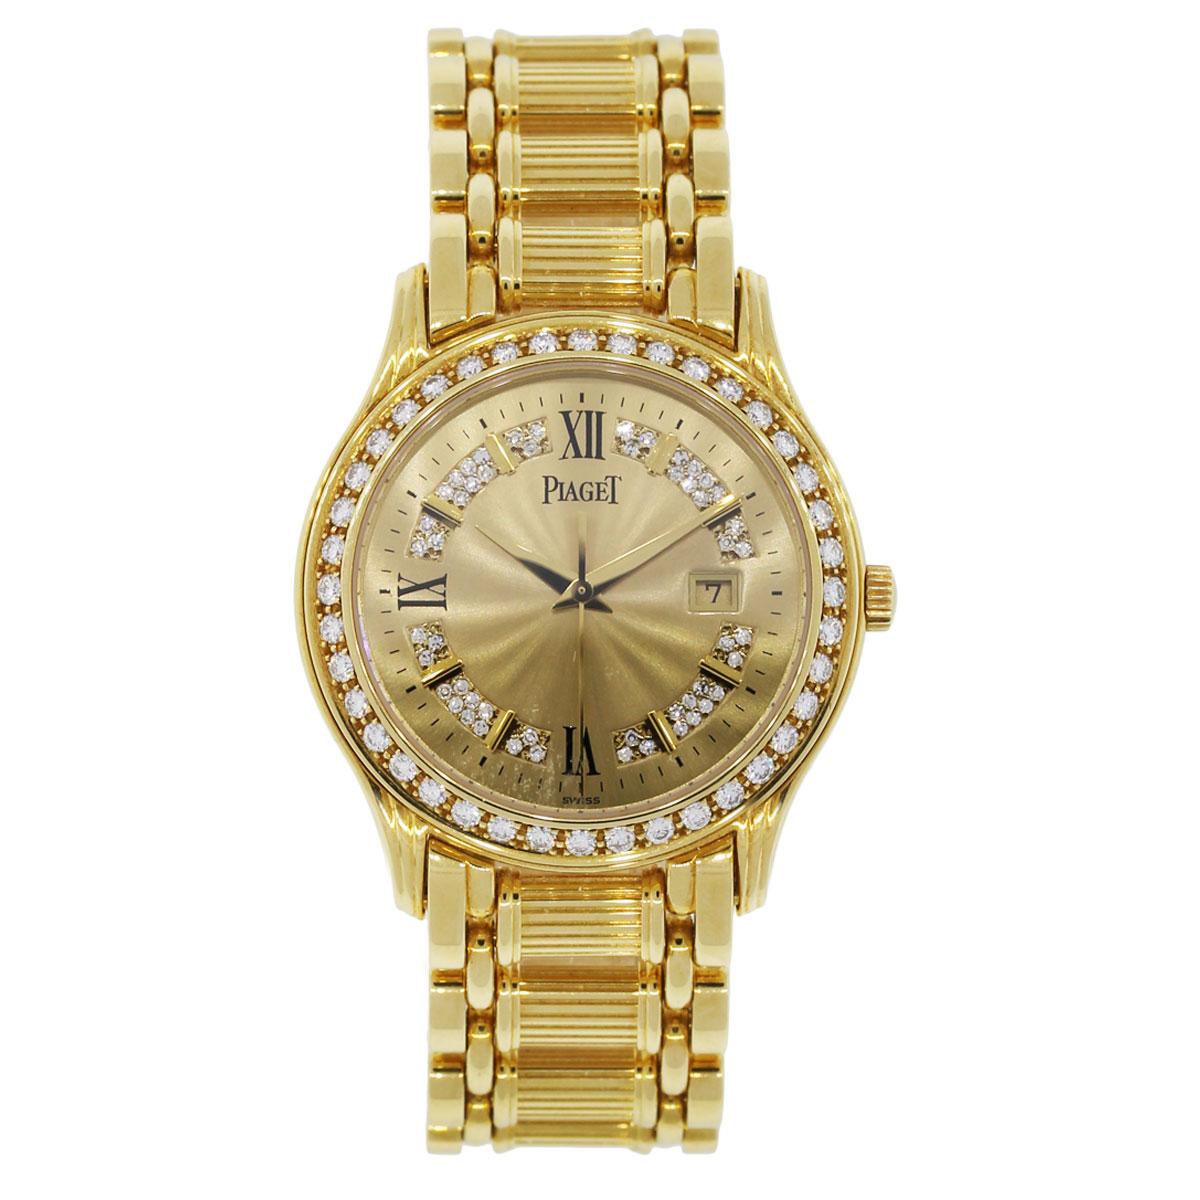 Piaget Polo 24005 M 501 D 18k Yellow Gold Diamond Watch